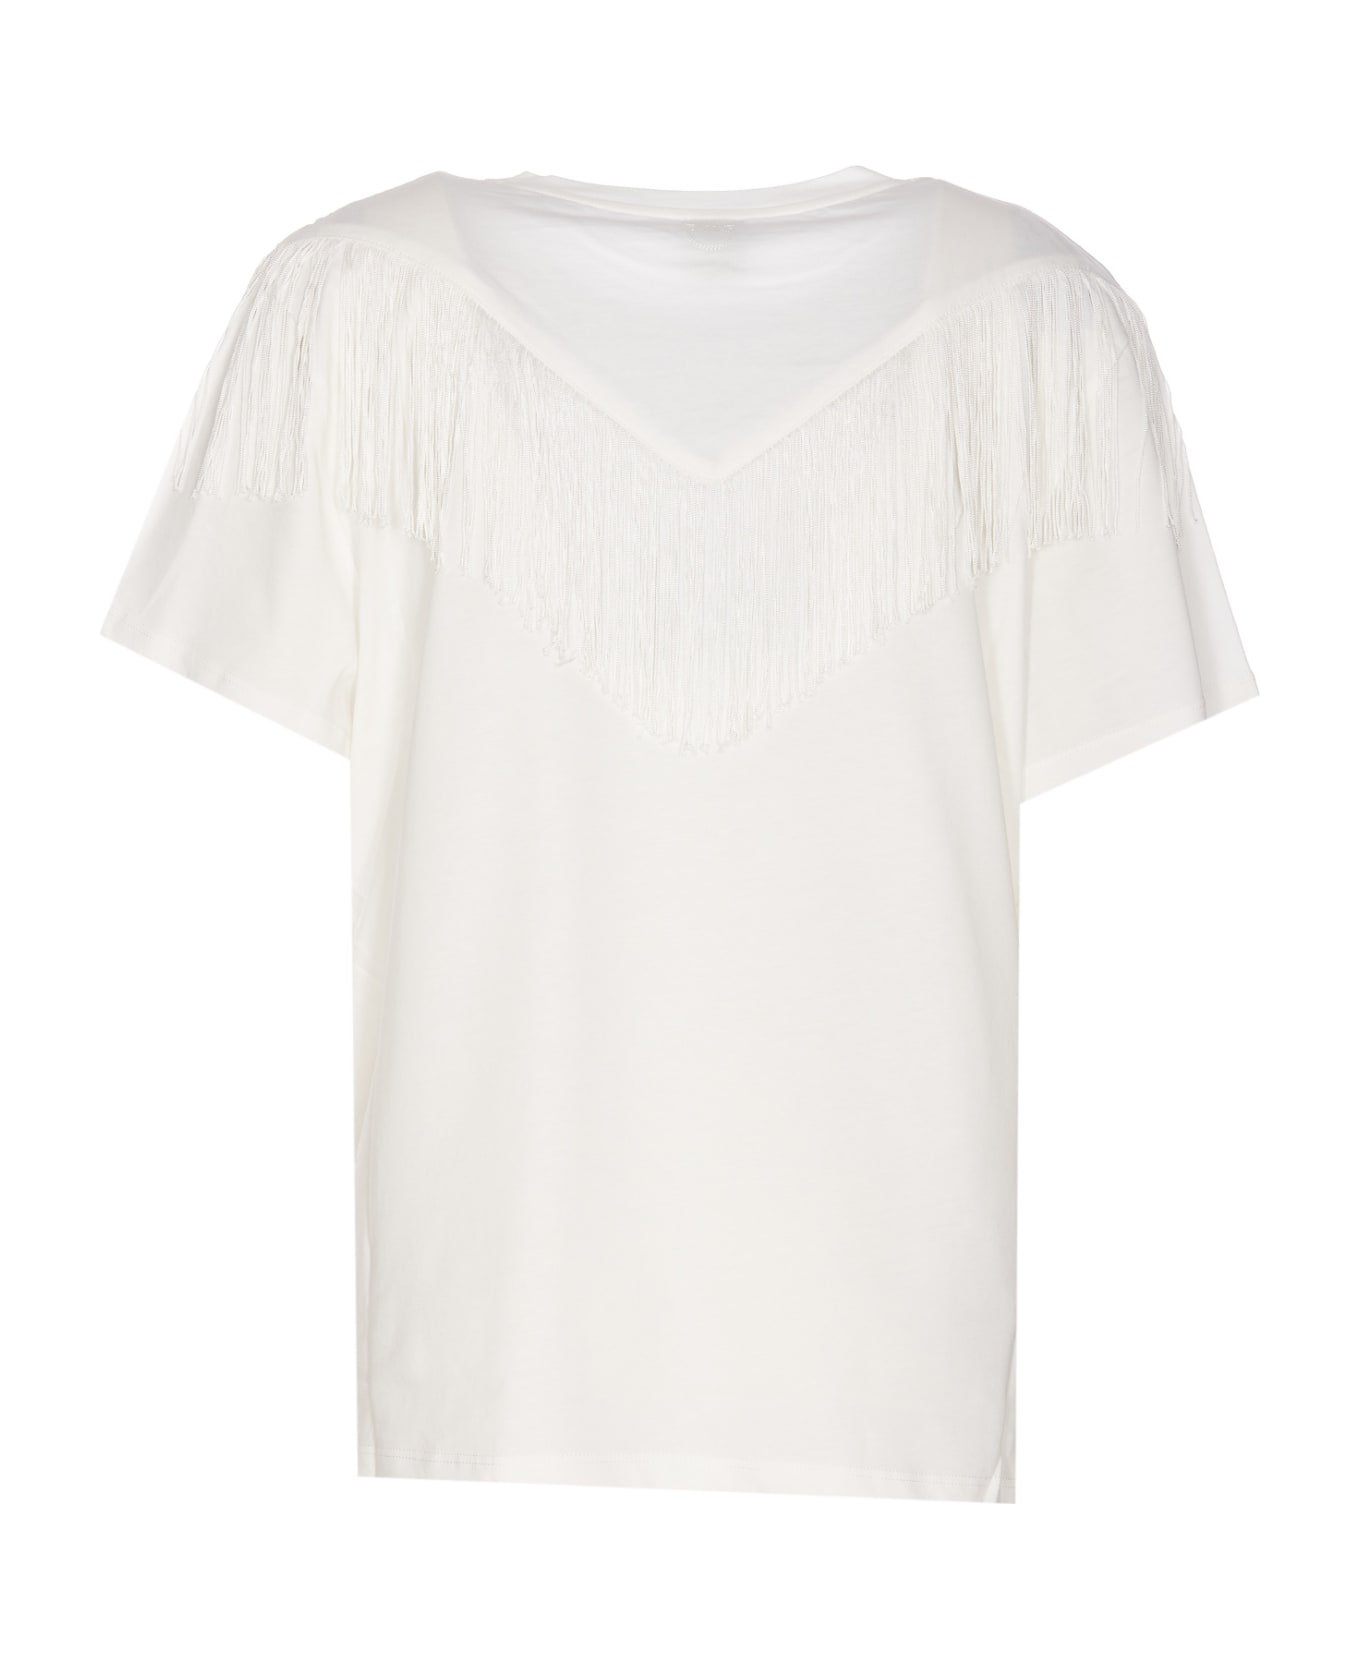 Pinko Fringes T-shirt - Bianco-biancaneve